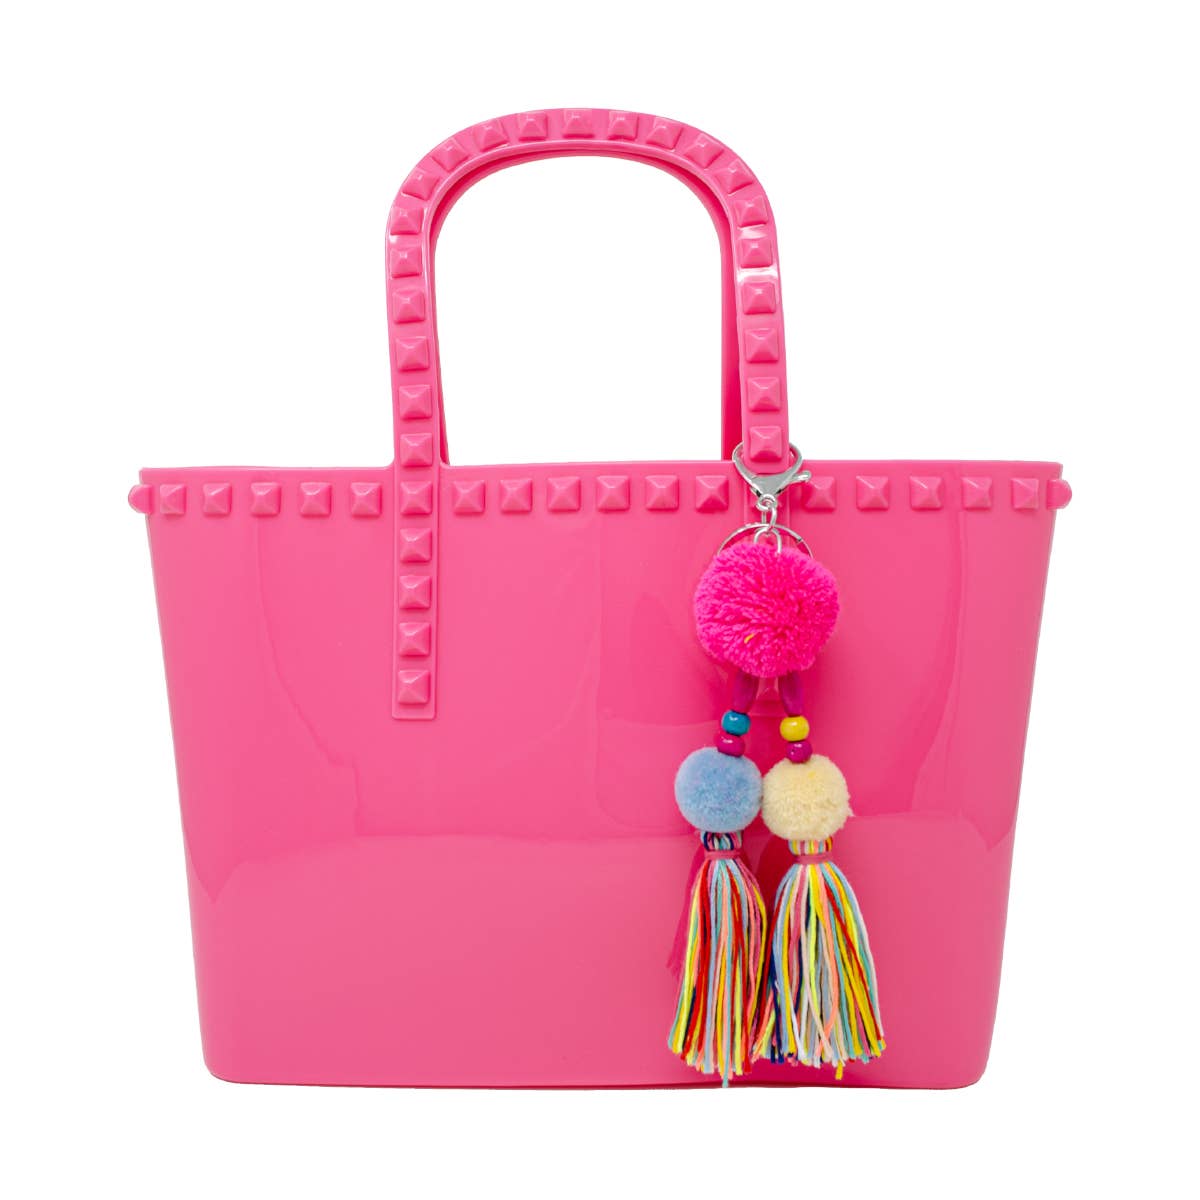 Jumbo Jelly Tote Bag Hot Pink - Tiny Treats